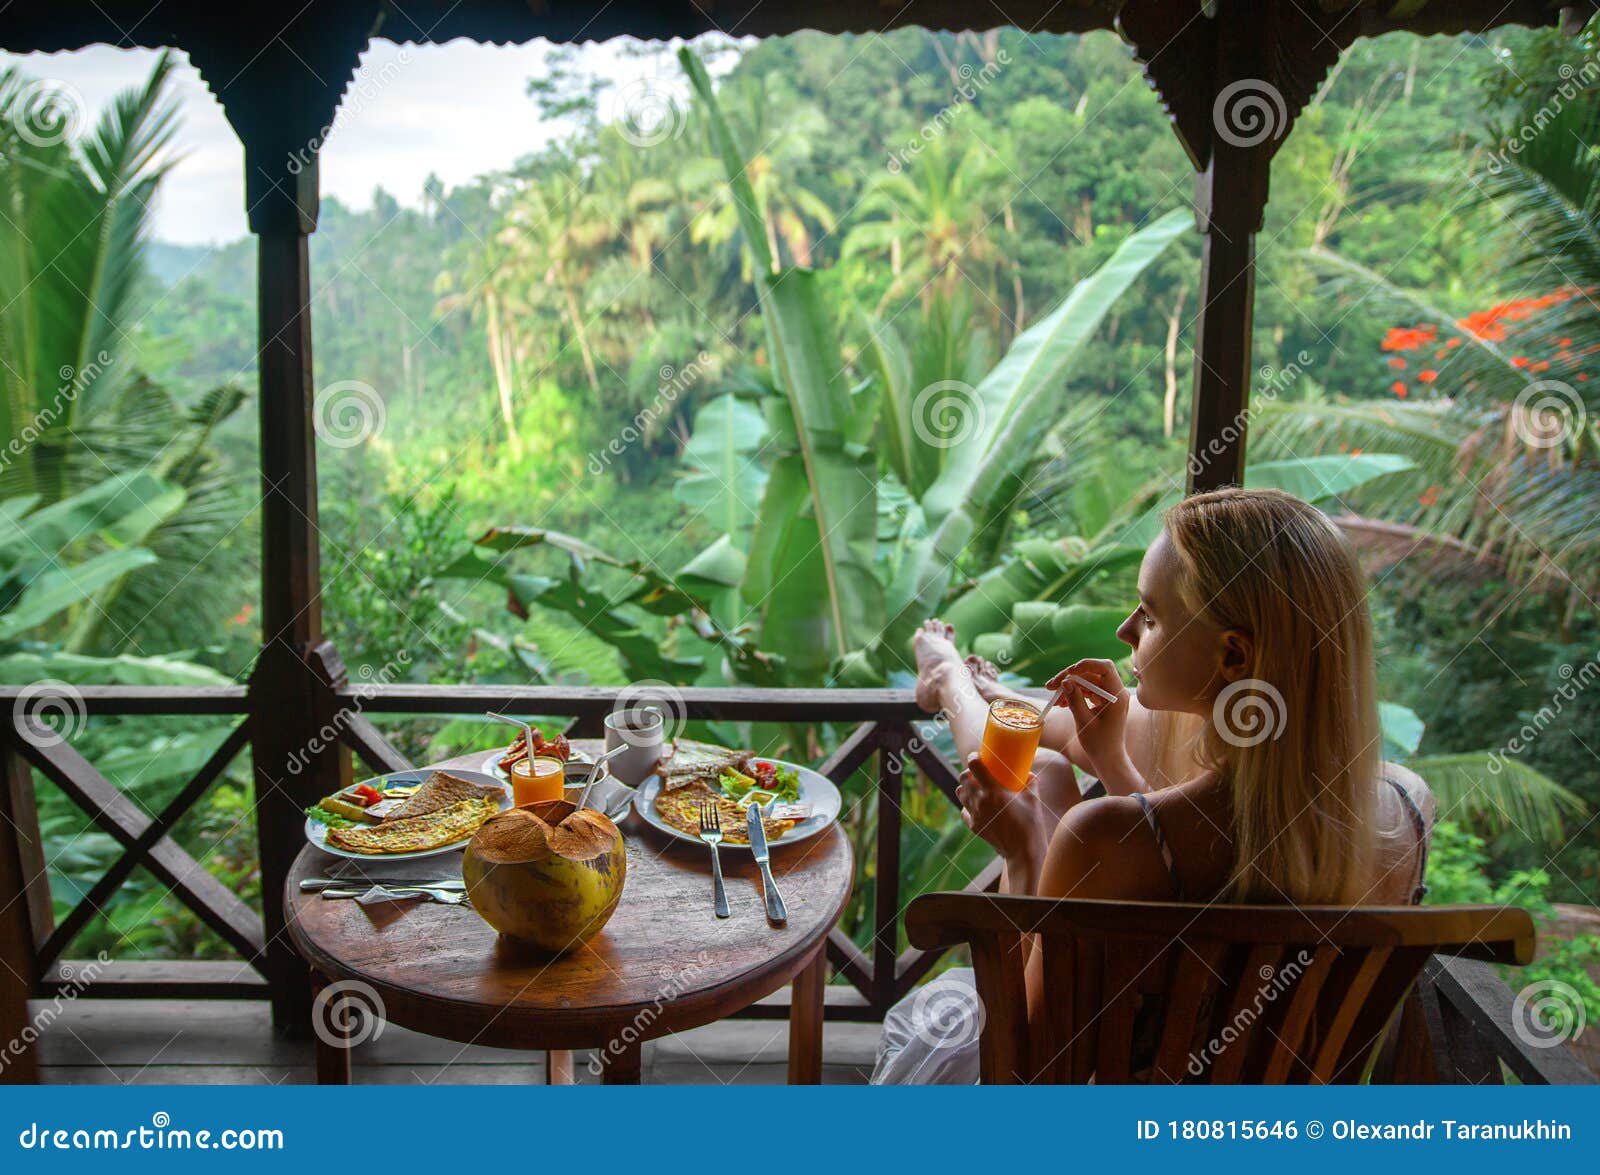 124,400 Desayuno Tropical Fotos de stock - Fotos libres de regalías de  Dreamstime